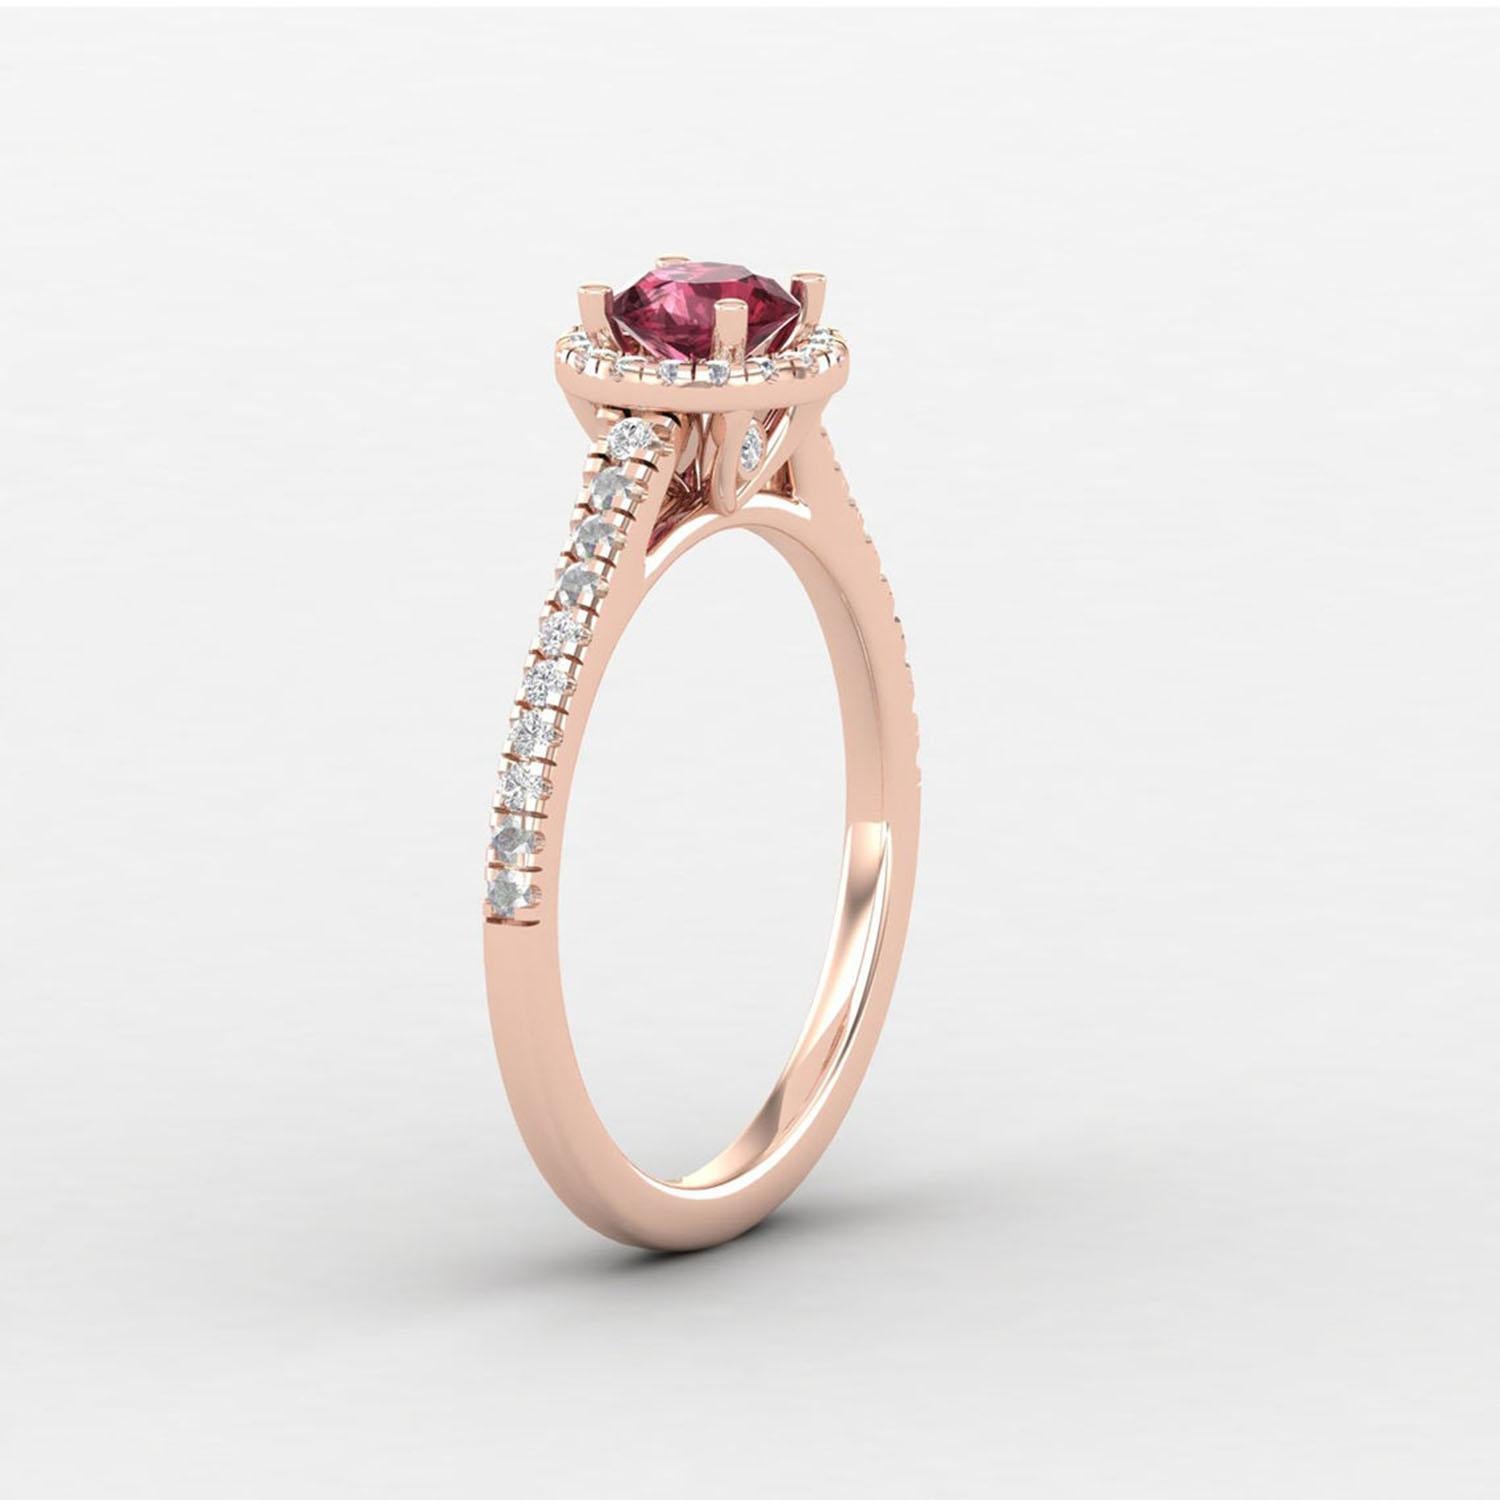 Modern 14 K Gold Rhodolite Garnet Ring / Diamond Solitaire Ring / Ring for Her For Sale